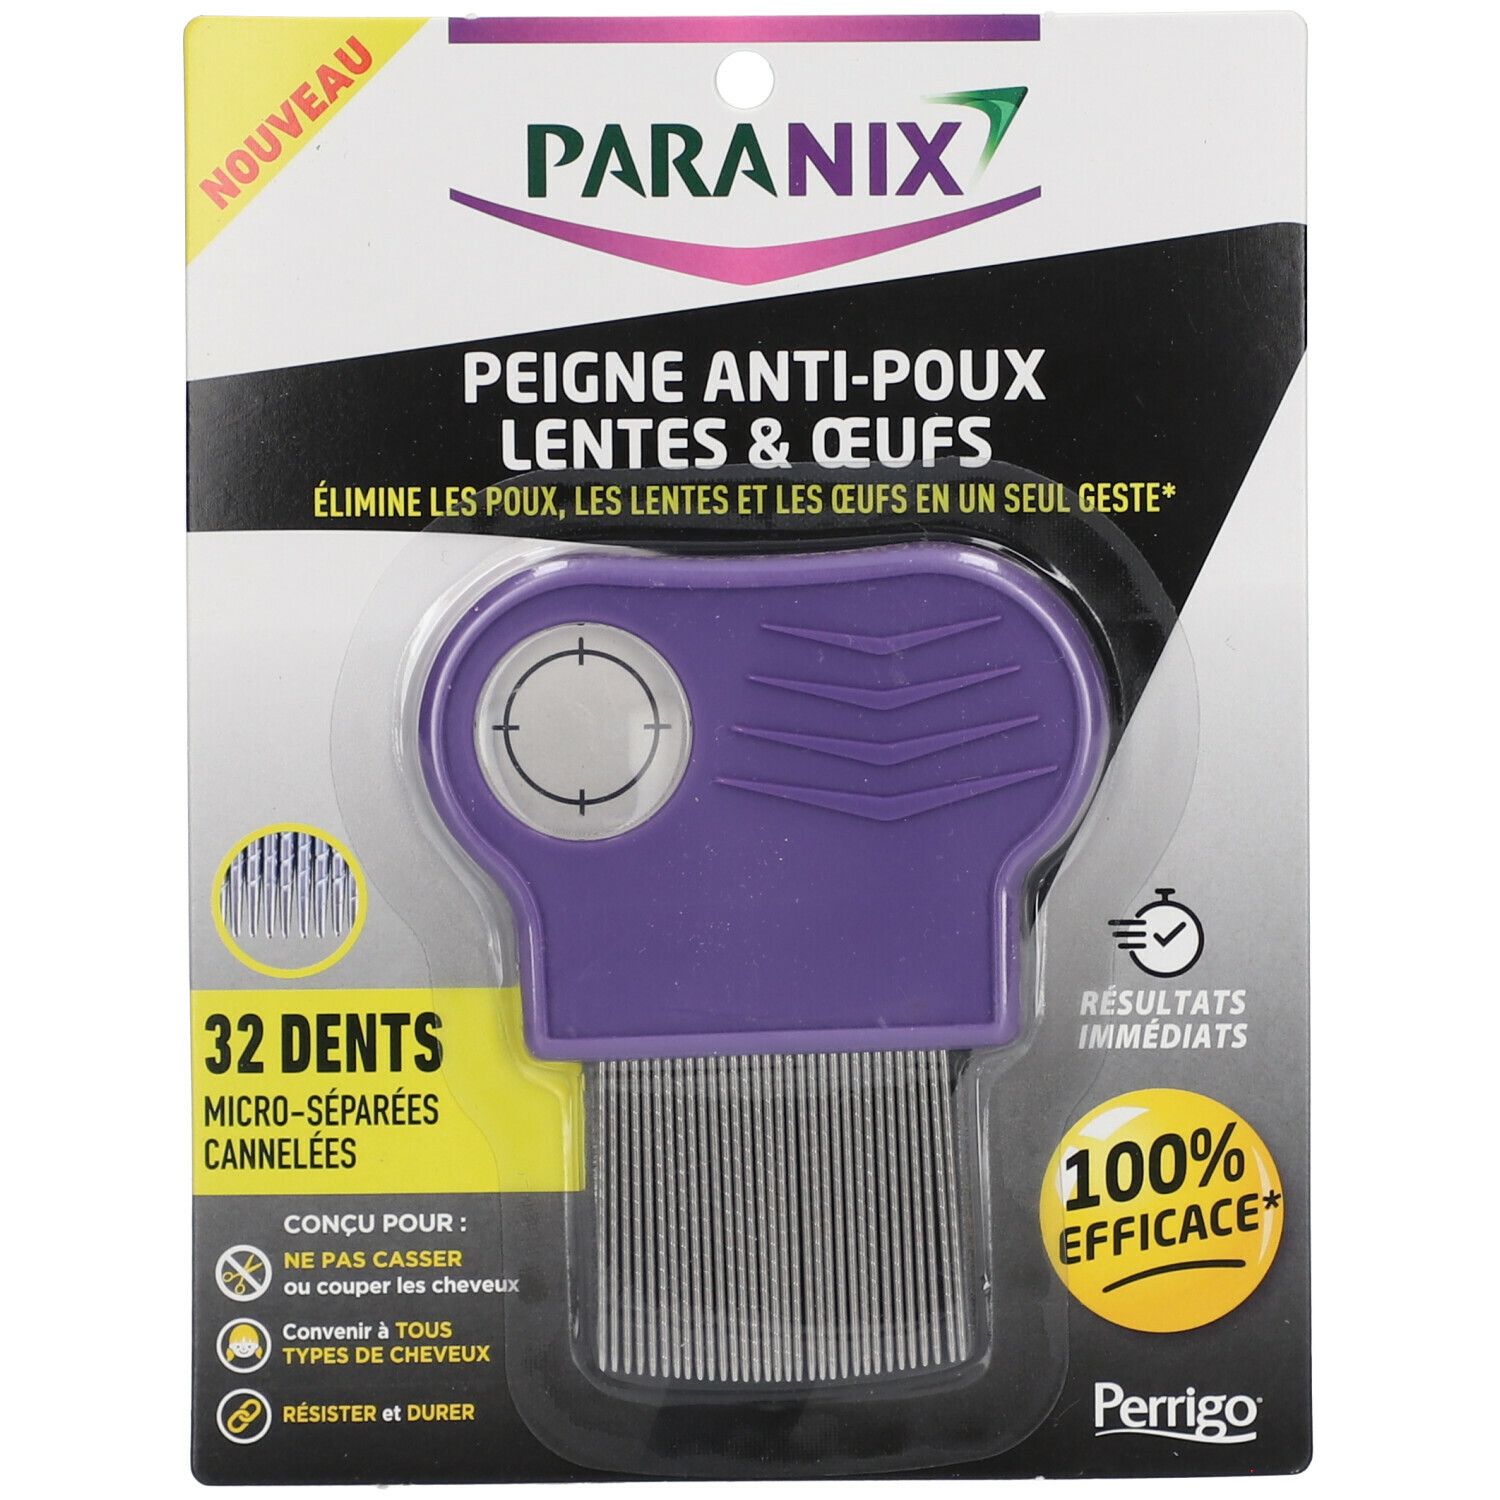 Paranix Peigne anti-poux 3 en 1